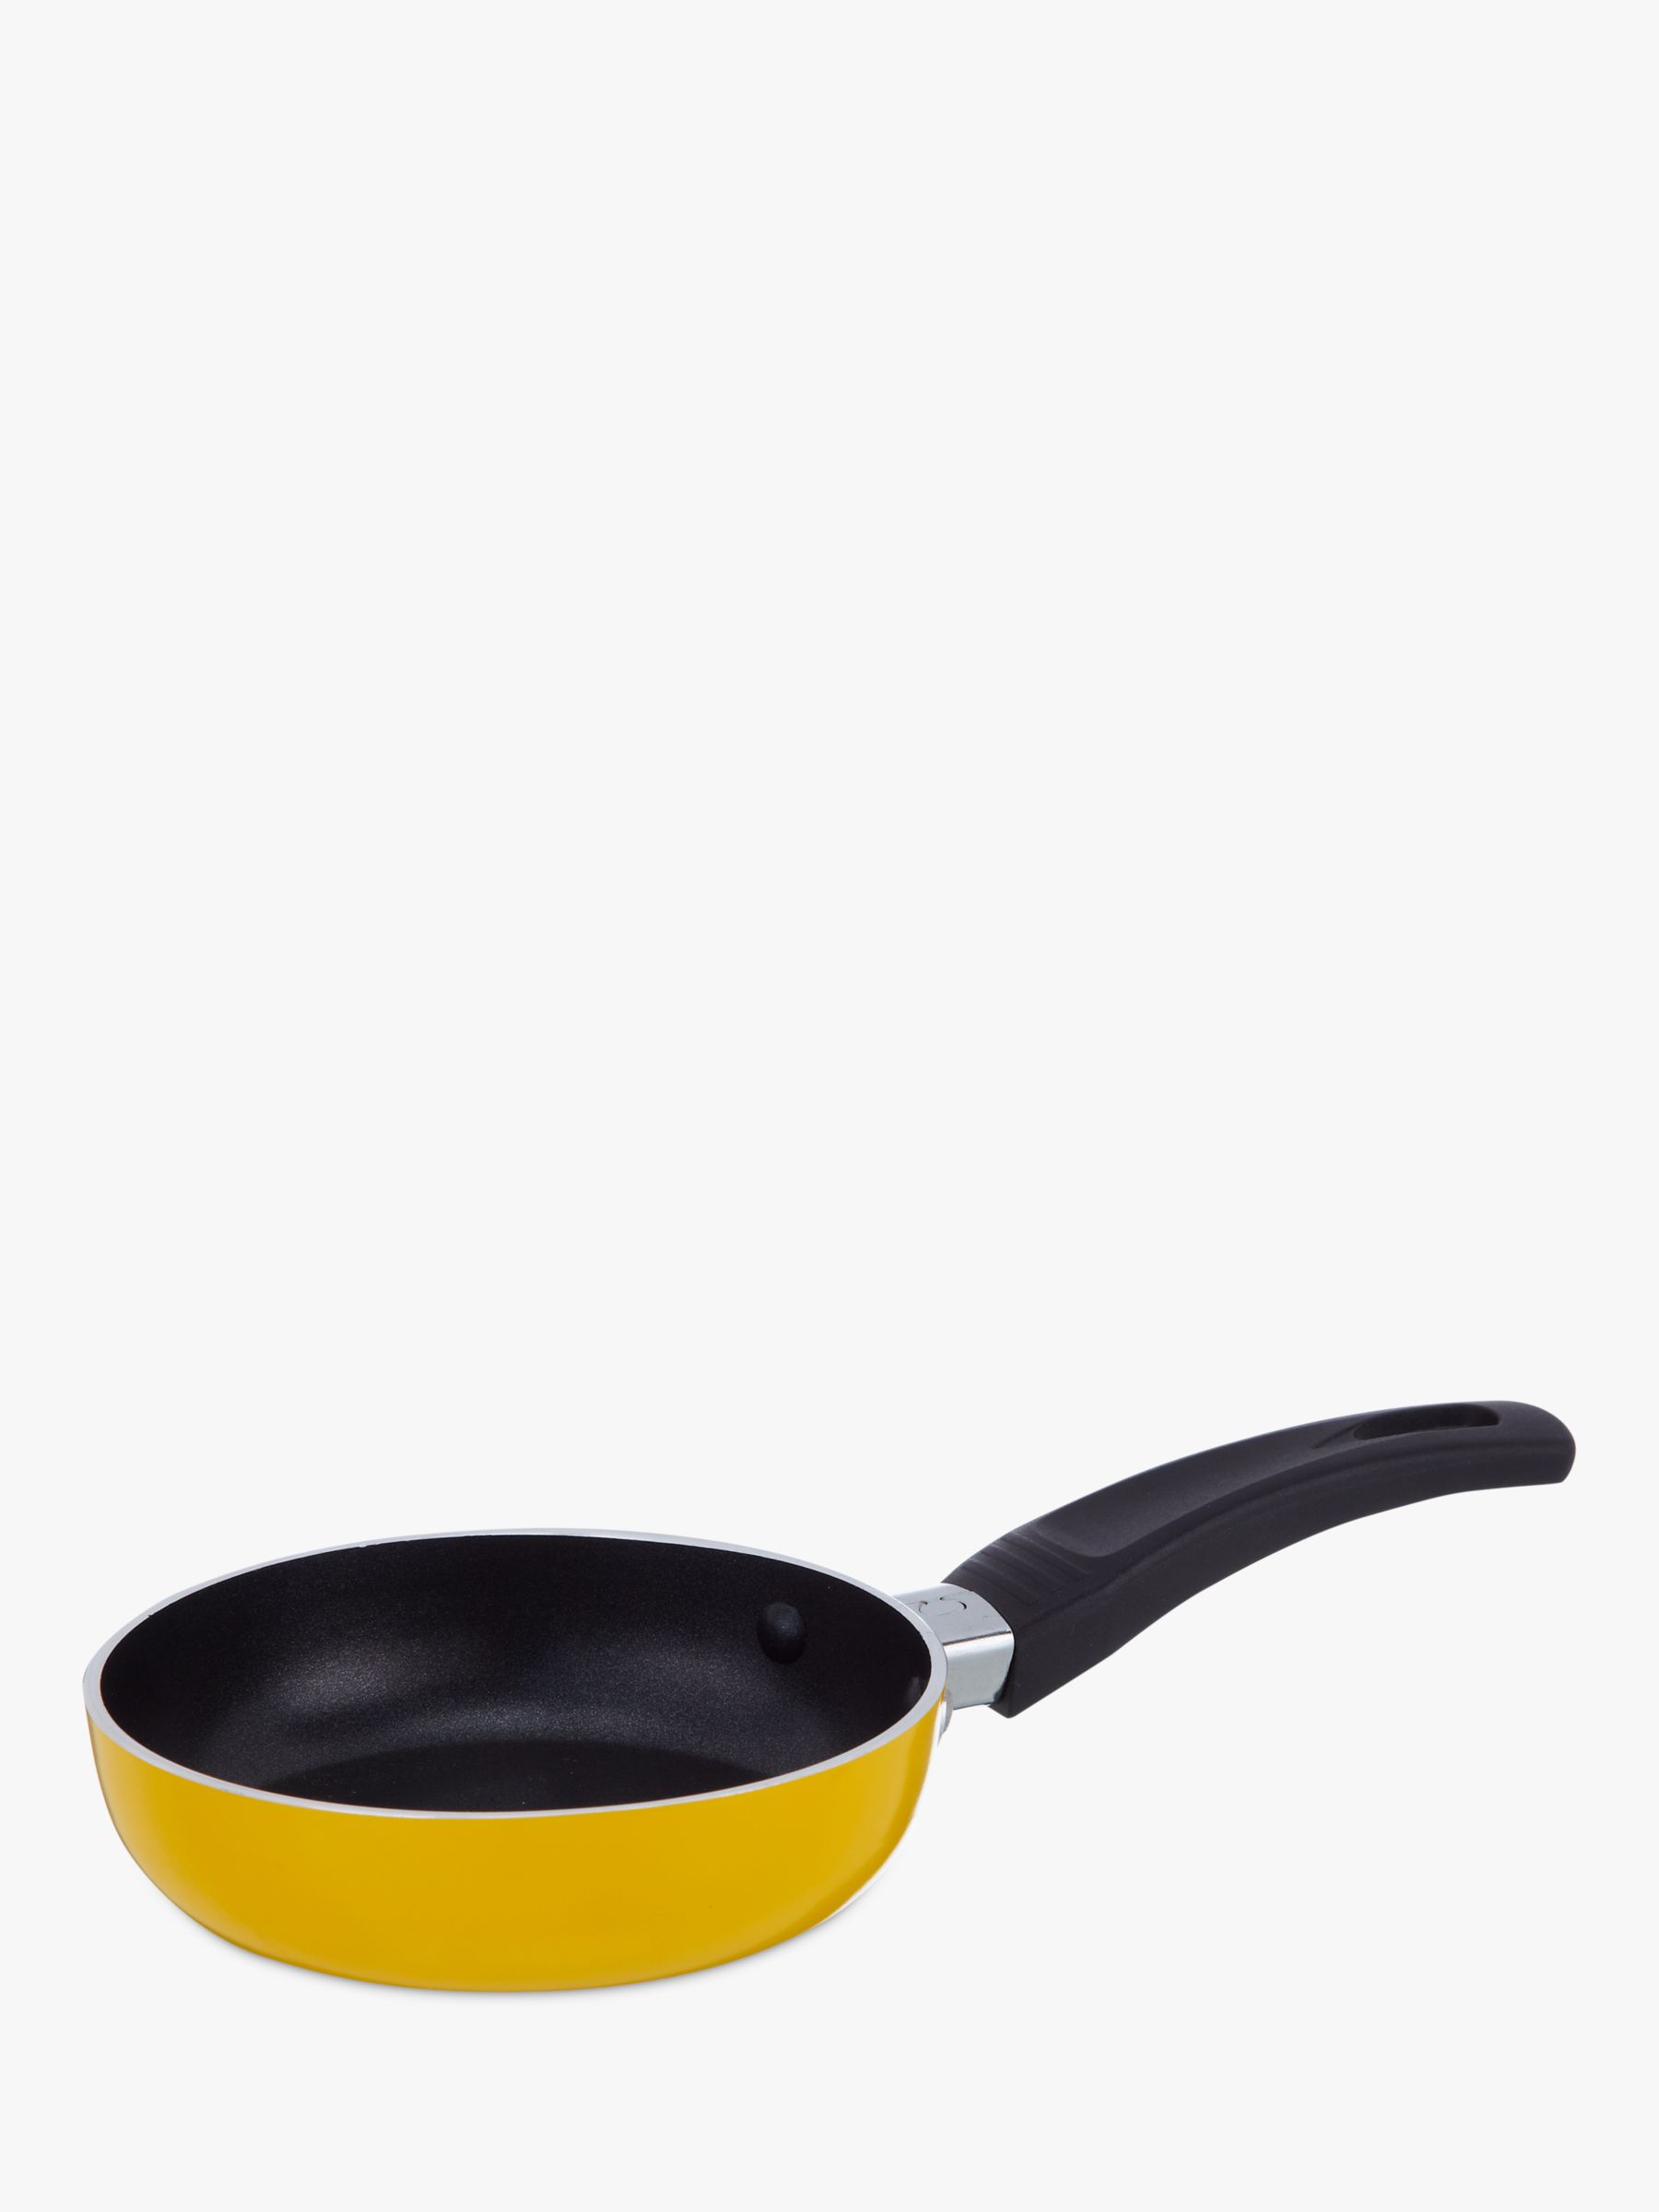 tiny frying pan